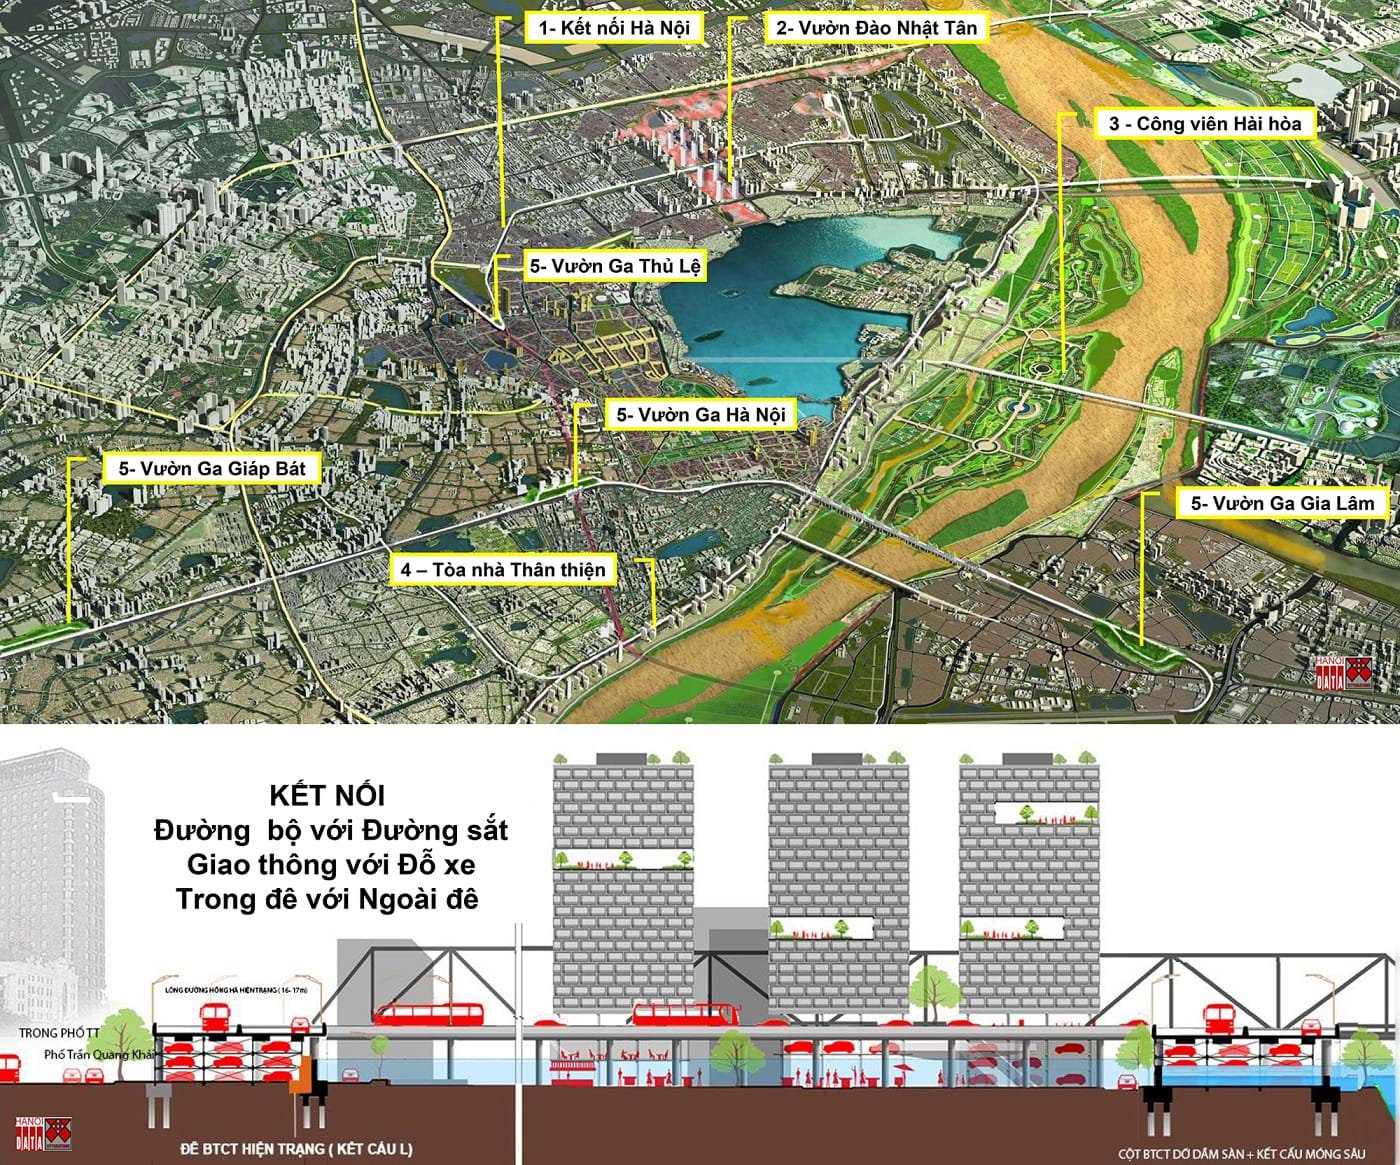 City Solution đề xuất mô hình “Liên kết Hà nội – Hanoilink” để tạo nên sức mạnh liên kết đồng bộ đa ngành